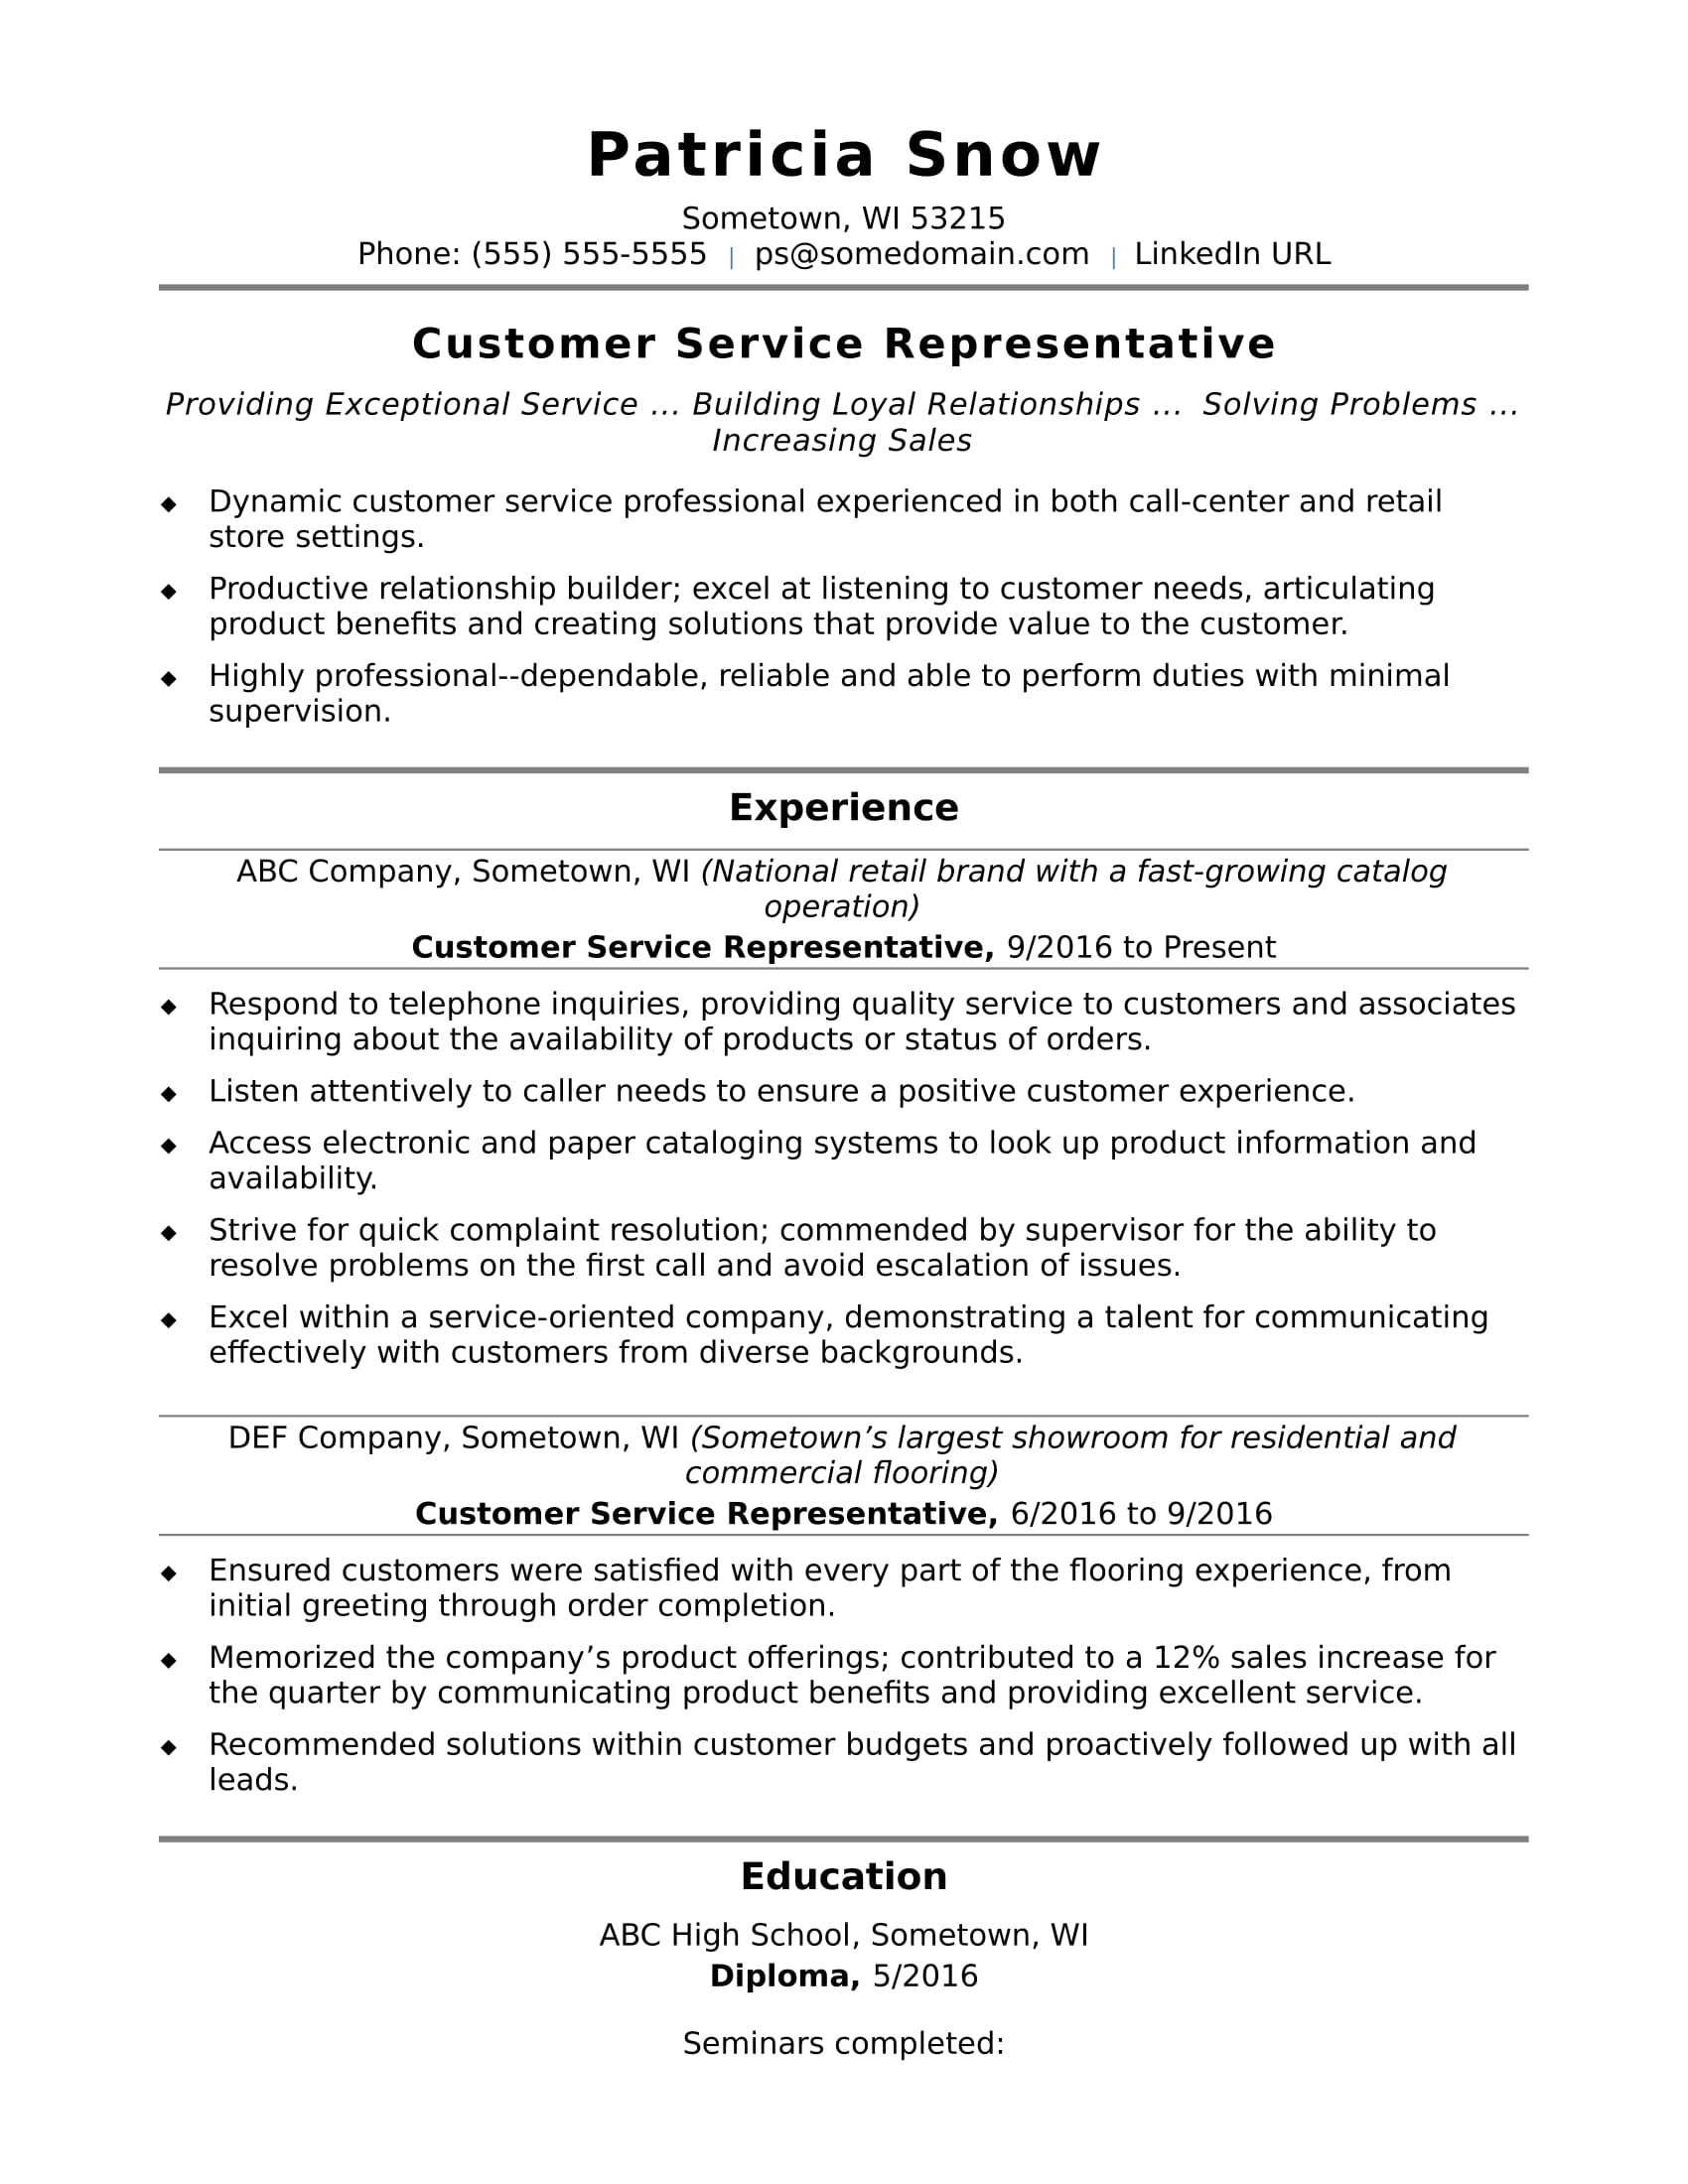 Sample Resume for Call Center Representative Customer Service Representative Resume Sample Monster.com